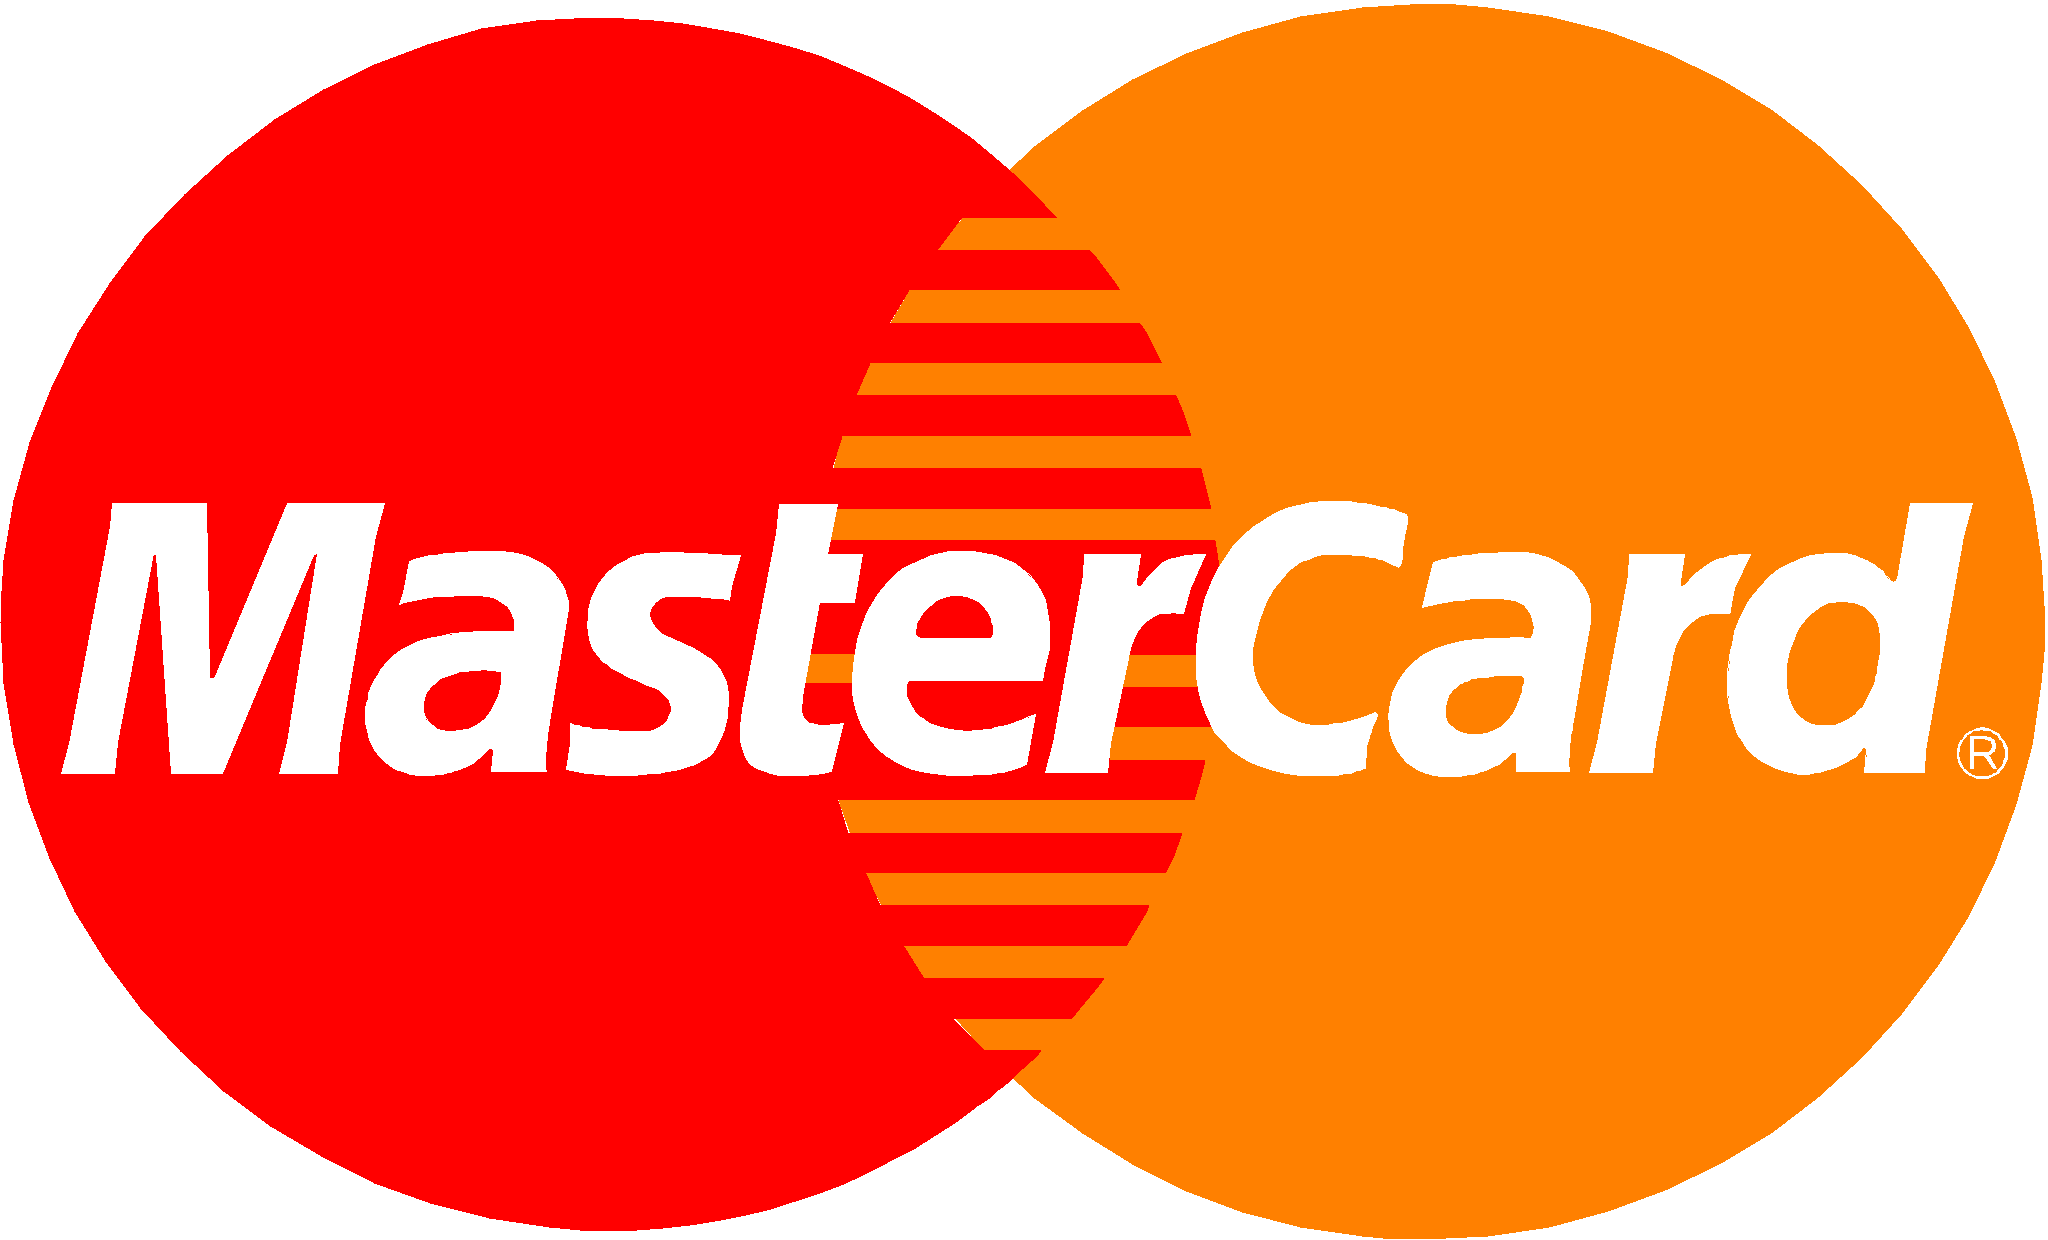 MasterCard Logo Clipart